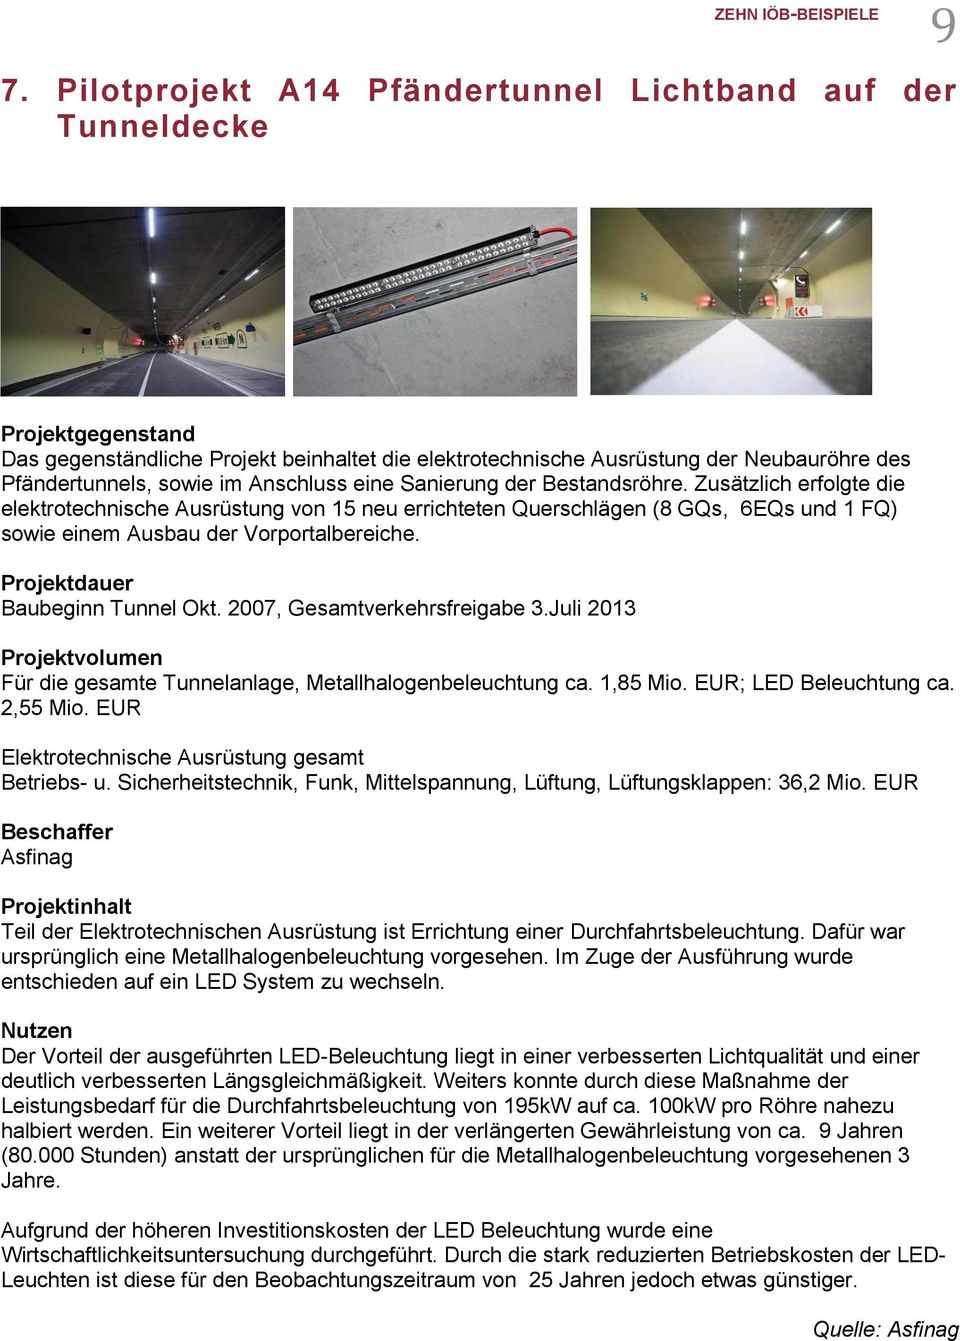 Baubeginn Tunnel Okt. 2007, Gesamtverkehrsfreigabe 3.Juli 2013 Für die gesamte Tunnelanlage, Metallhalogenbeleuchtung ca. 1,85 Mio. EUR; LED Beleuchtung ca. 2,55 Mio.